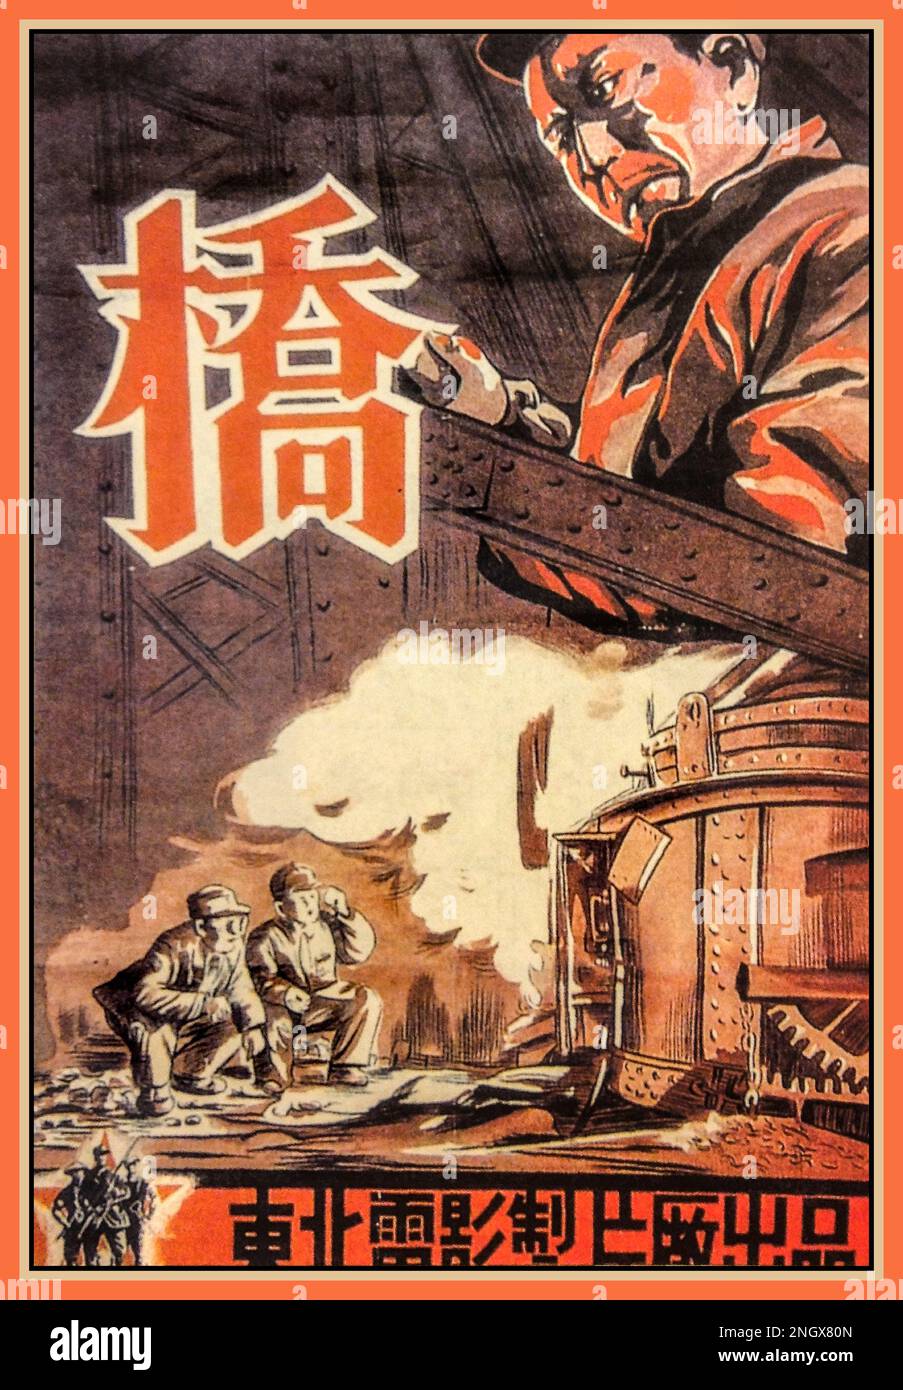 Vintage Chinese 'The Bridge', Filmposter, 1949. Volksrepublik China (VR China). Ein Kriegsfilm, der kurz nach der kommunistischen Revolution gedreht wurde; gilt als erster Film, der nach der Gründung der VR China fertiggestellt wurde. "Die Brücke" setzte viele der Themen, die das kommunistische Kino Chinas nach 1949 dominieren würden, einschließlich der Verherrlichung des Arbeiters und der Umwandlung des Intellektuellen in Kommunismus. Stockfoto